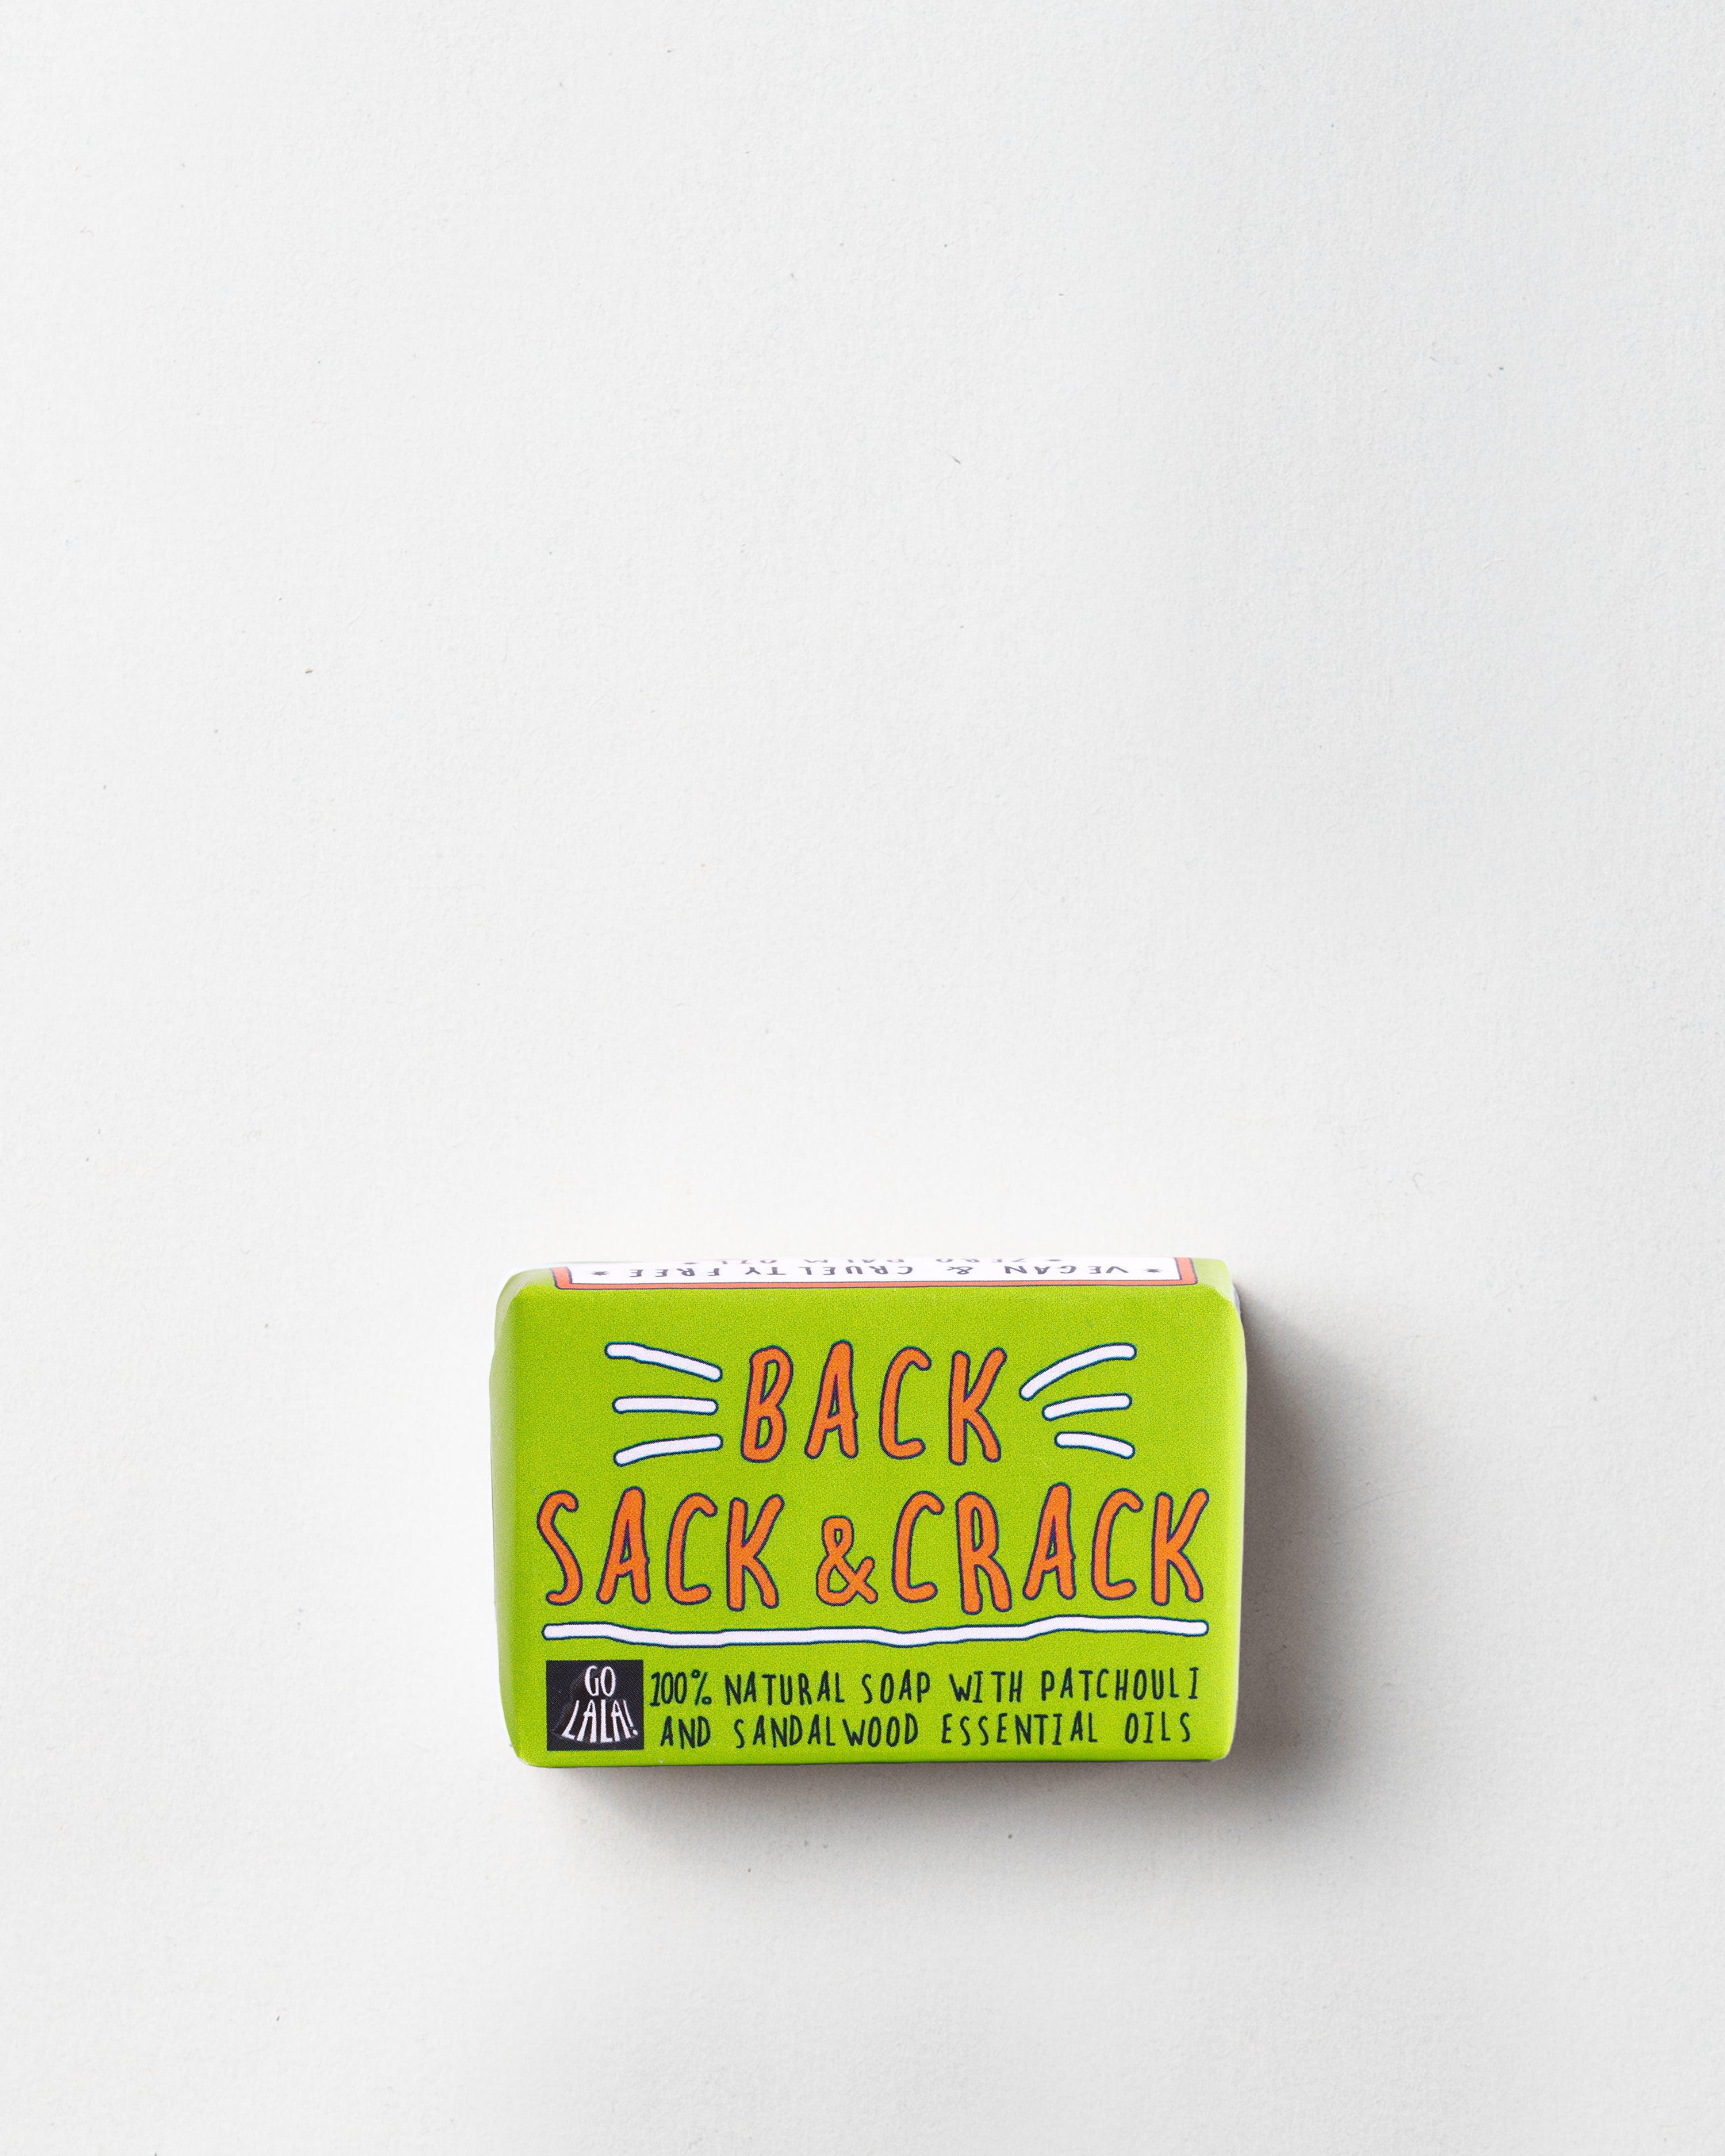 Soap/Back Sack Crack